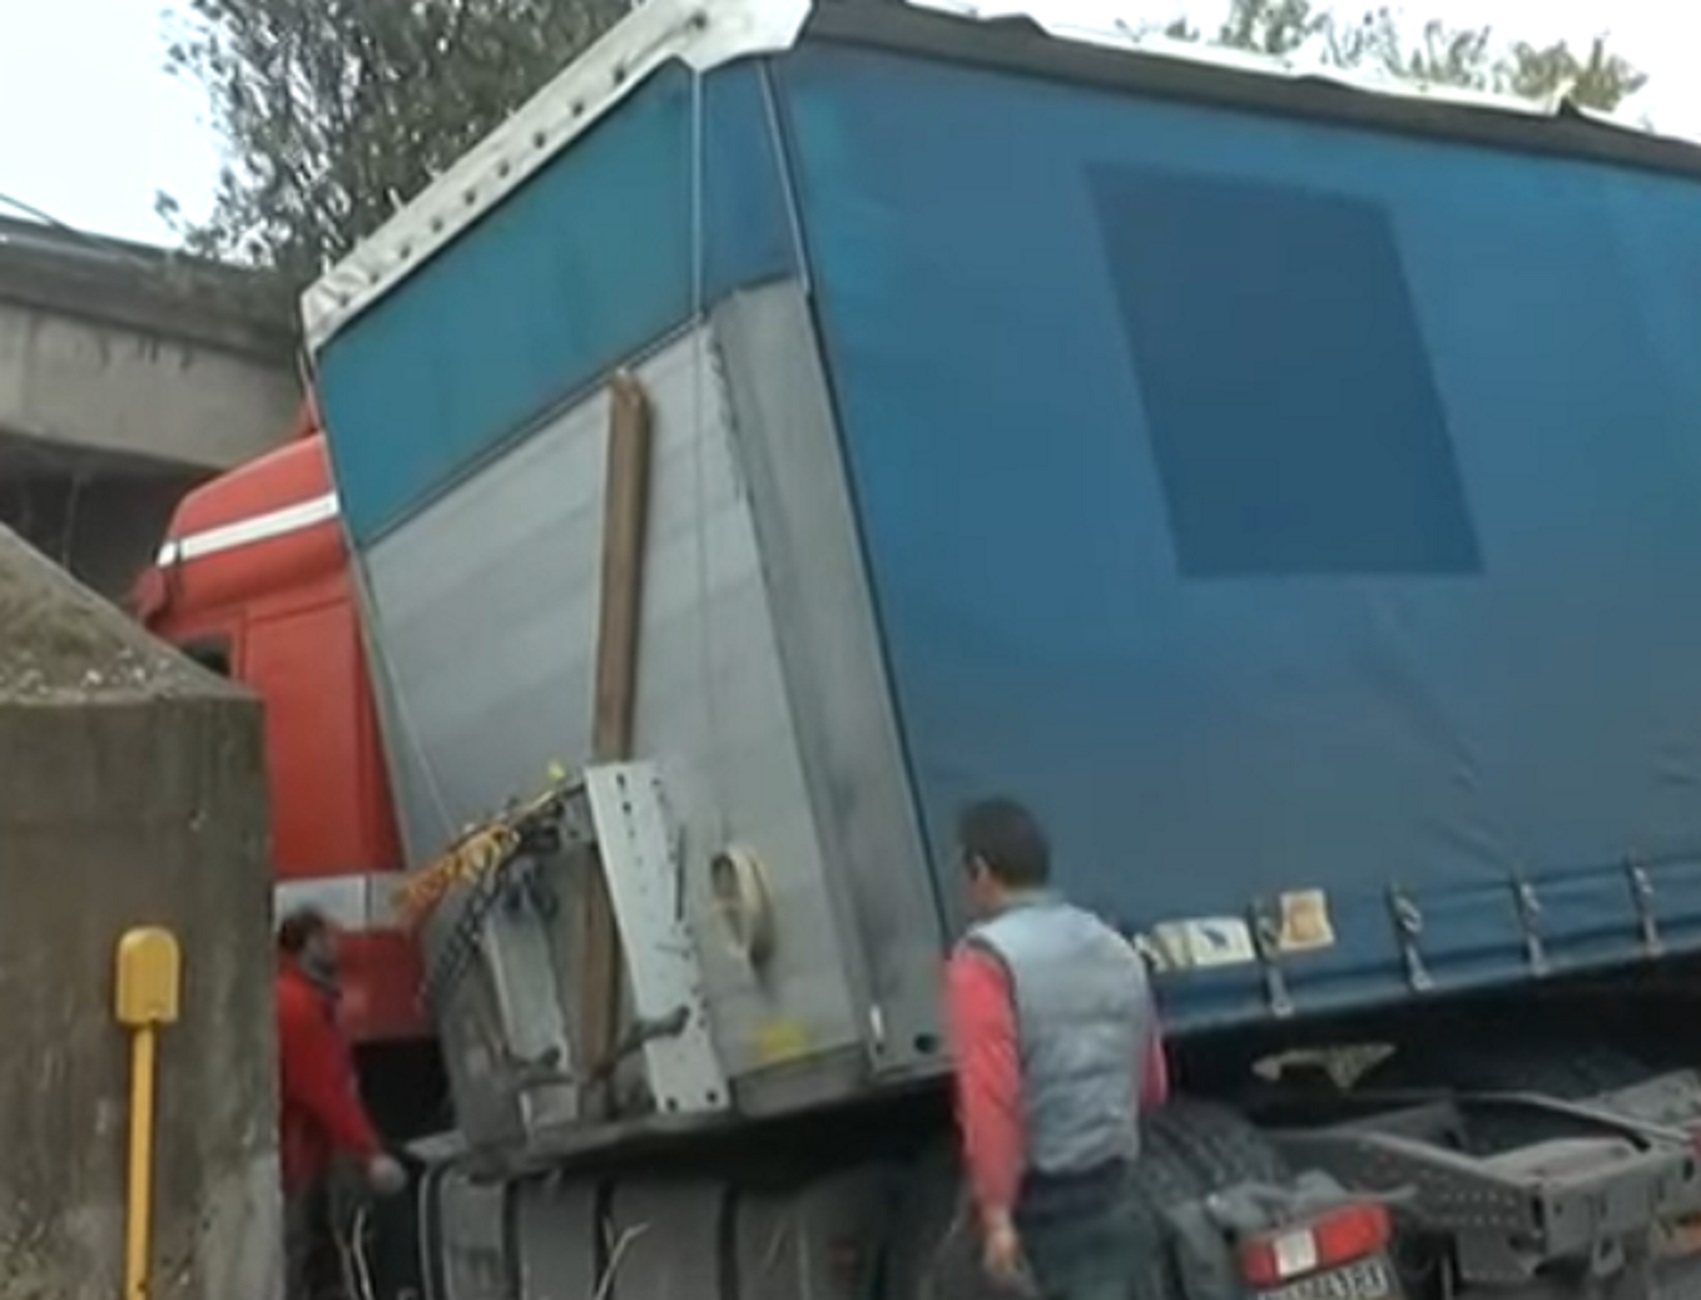 Σέρρες: Ο οδηγός της νταλίκας δεν πρόσεξε το ύψος της γέφυρας και δείτε τι συνέβη στο σημείο